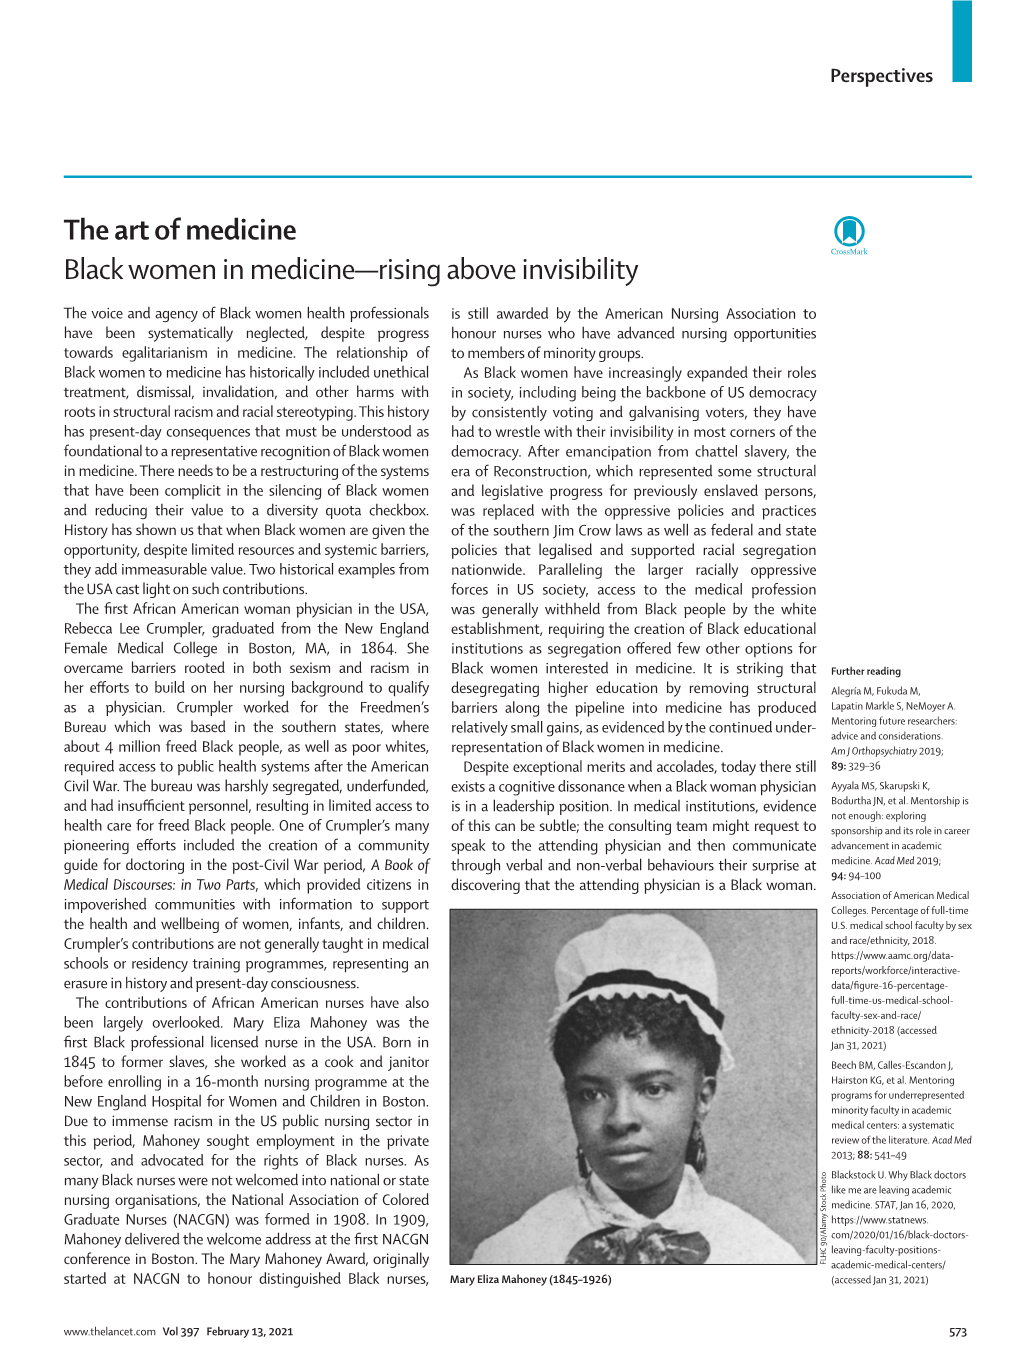 Black Women in Medicine—Rising Above Invisibility